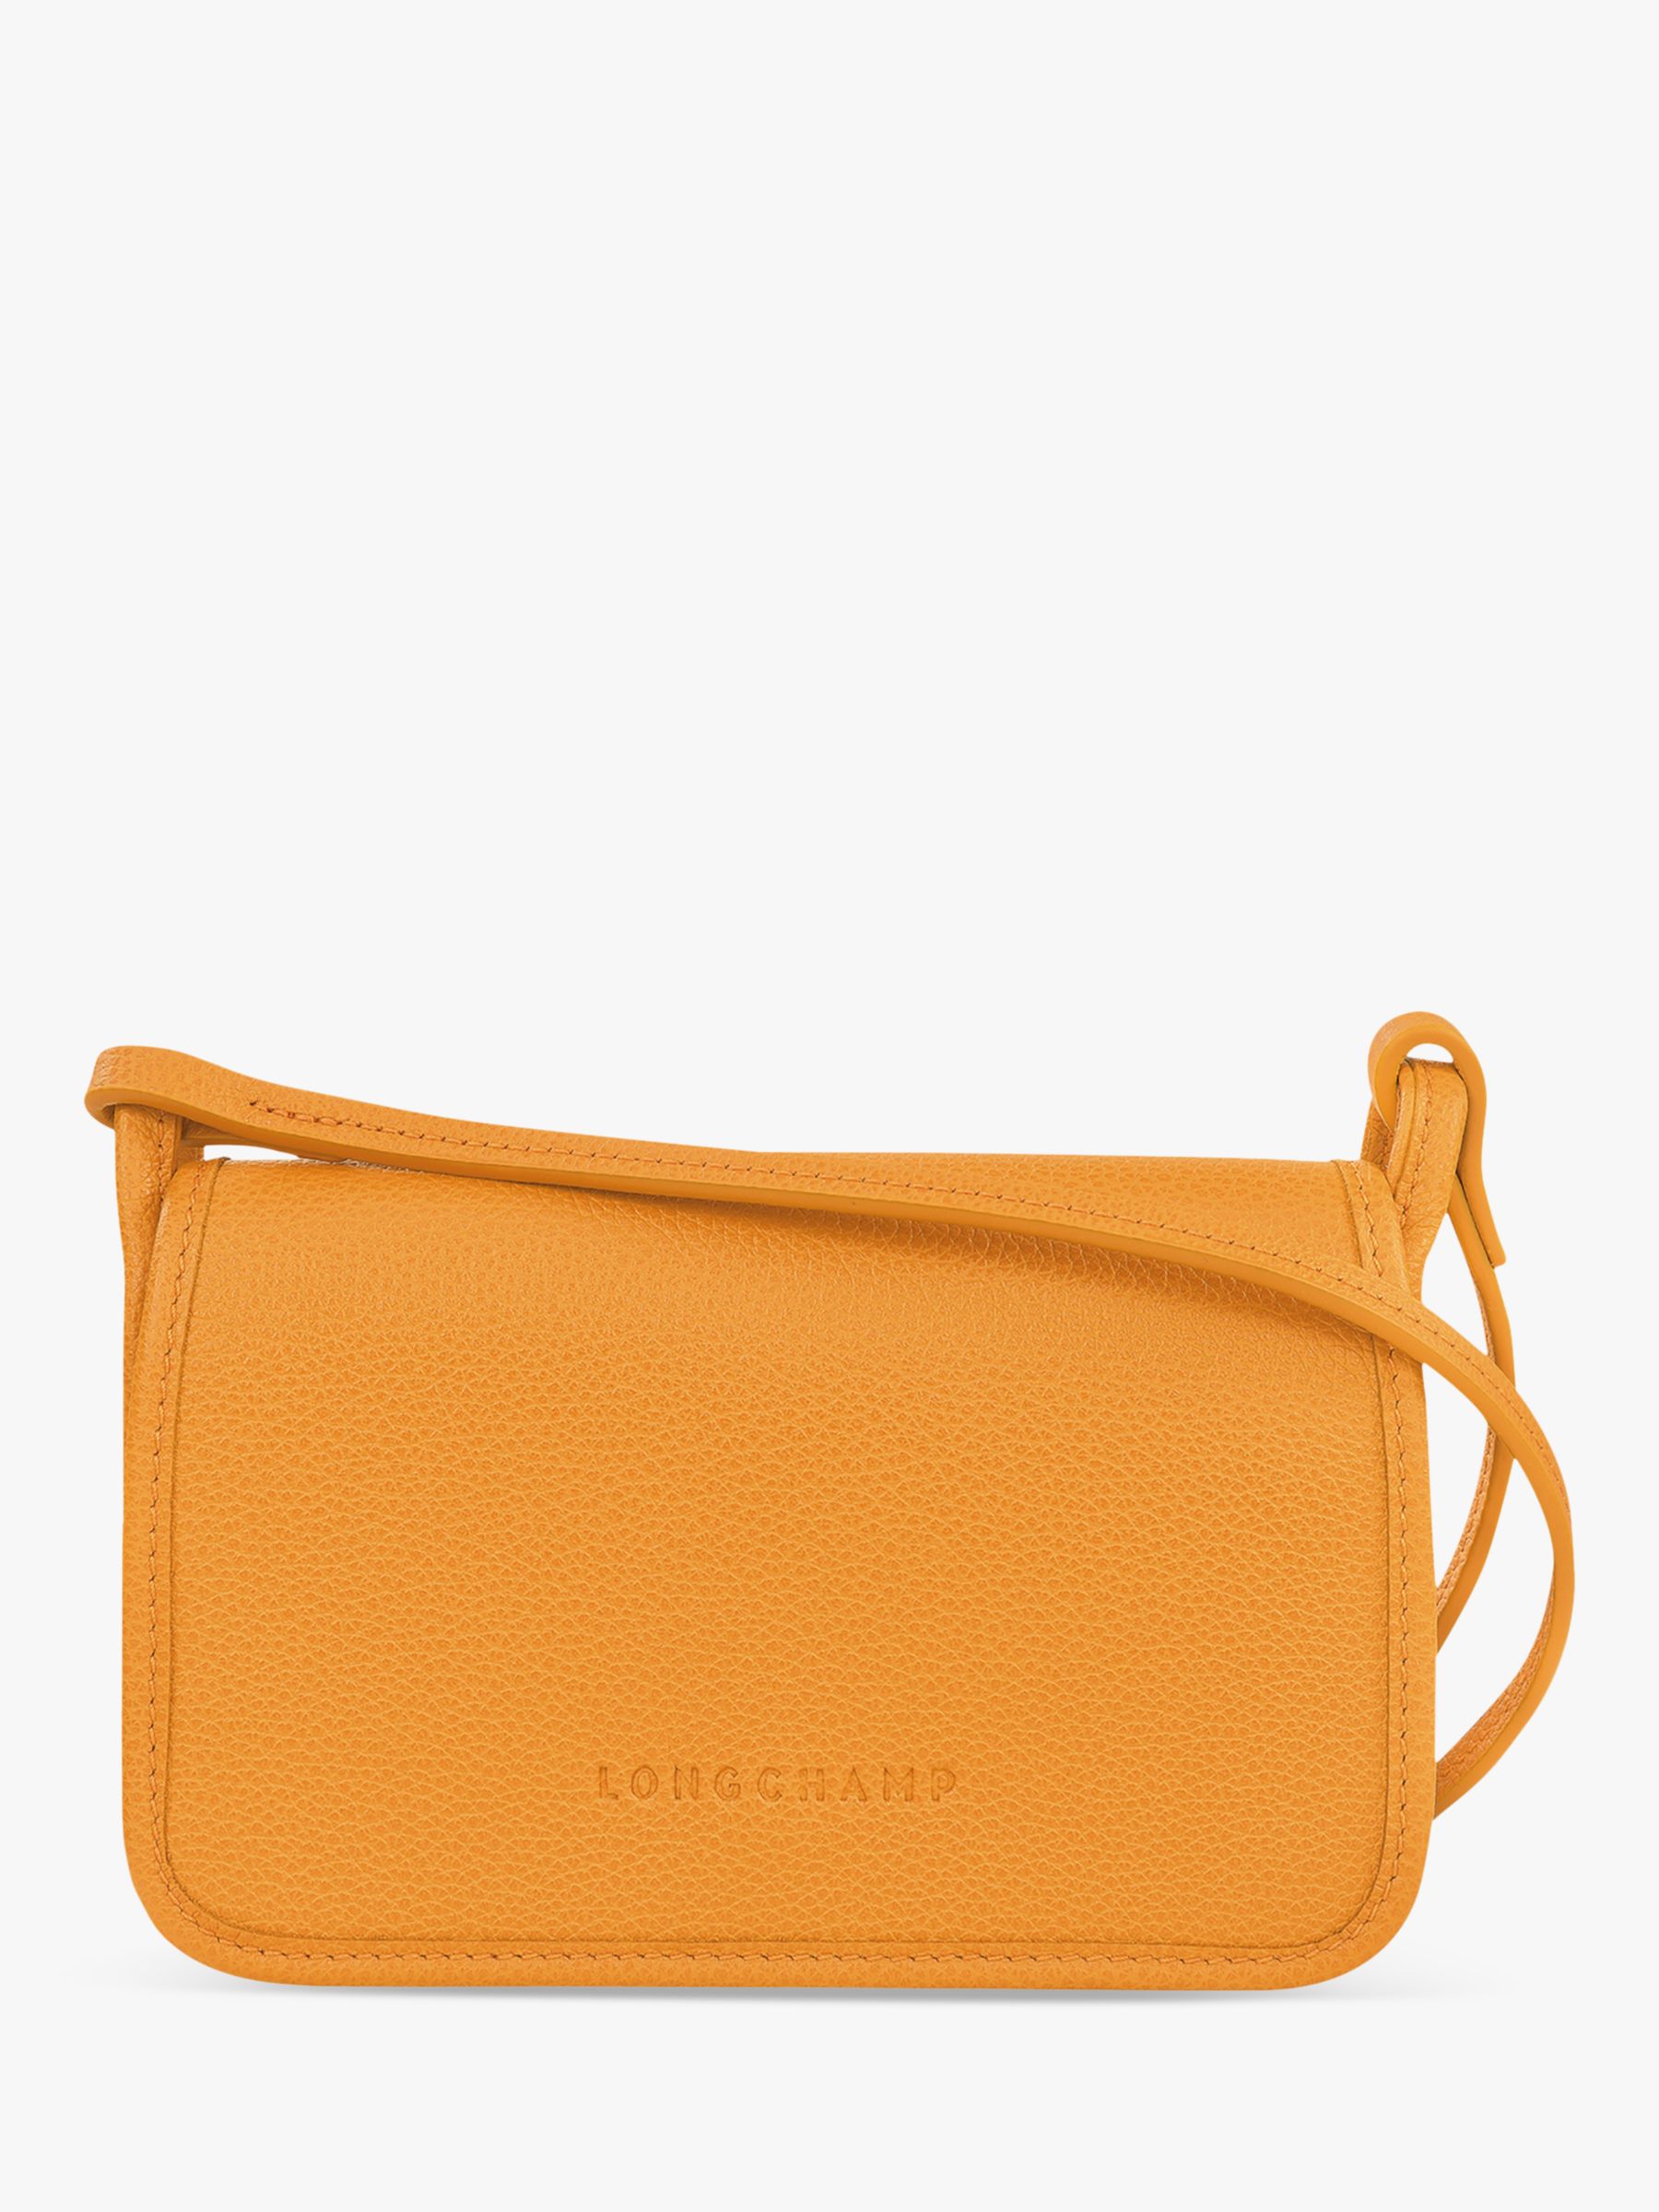 Longchamp Le Foulonné Leather Wallet on Shoulder Strap, Apricot at John ...